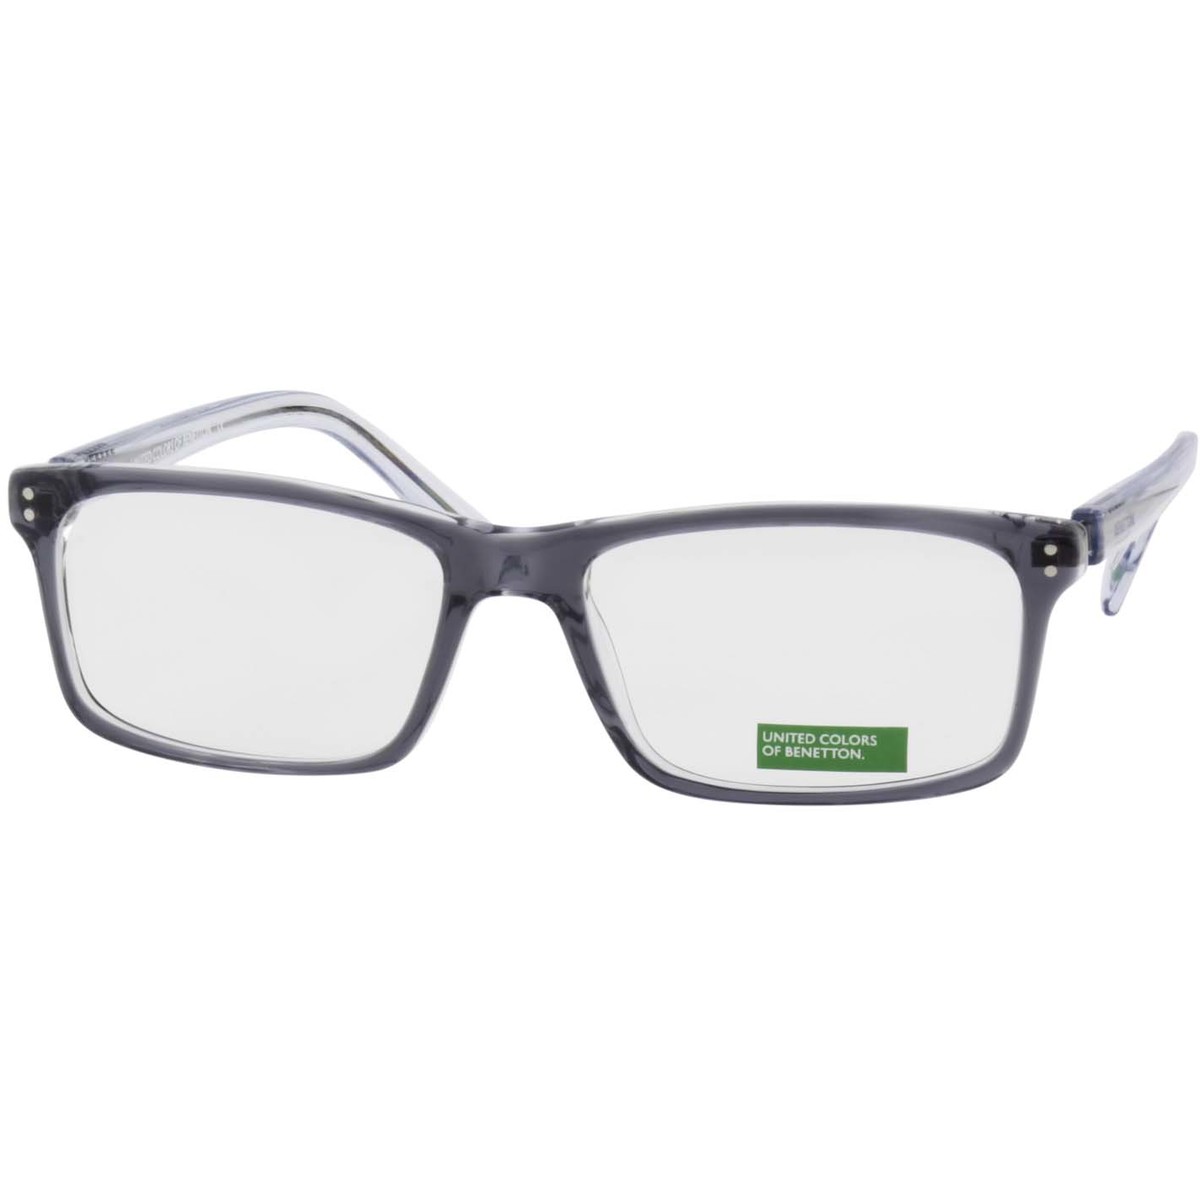 Rame ochelari vedere barbati United Colors of Benetton BN239V01